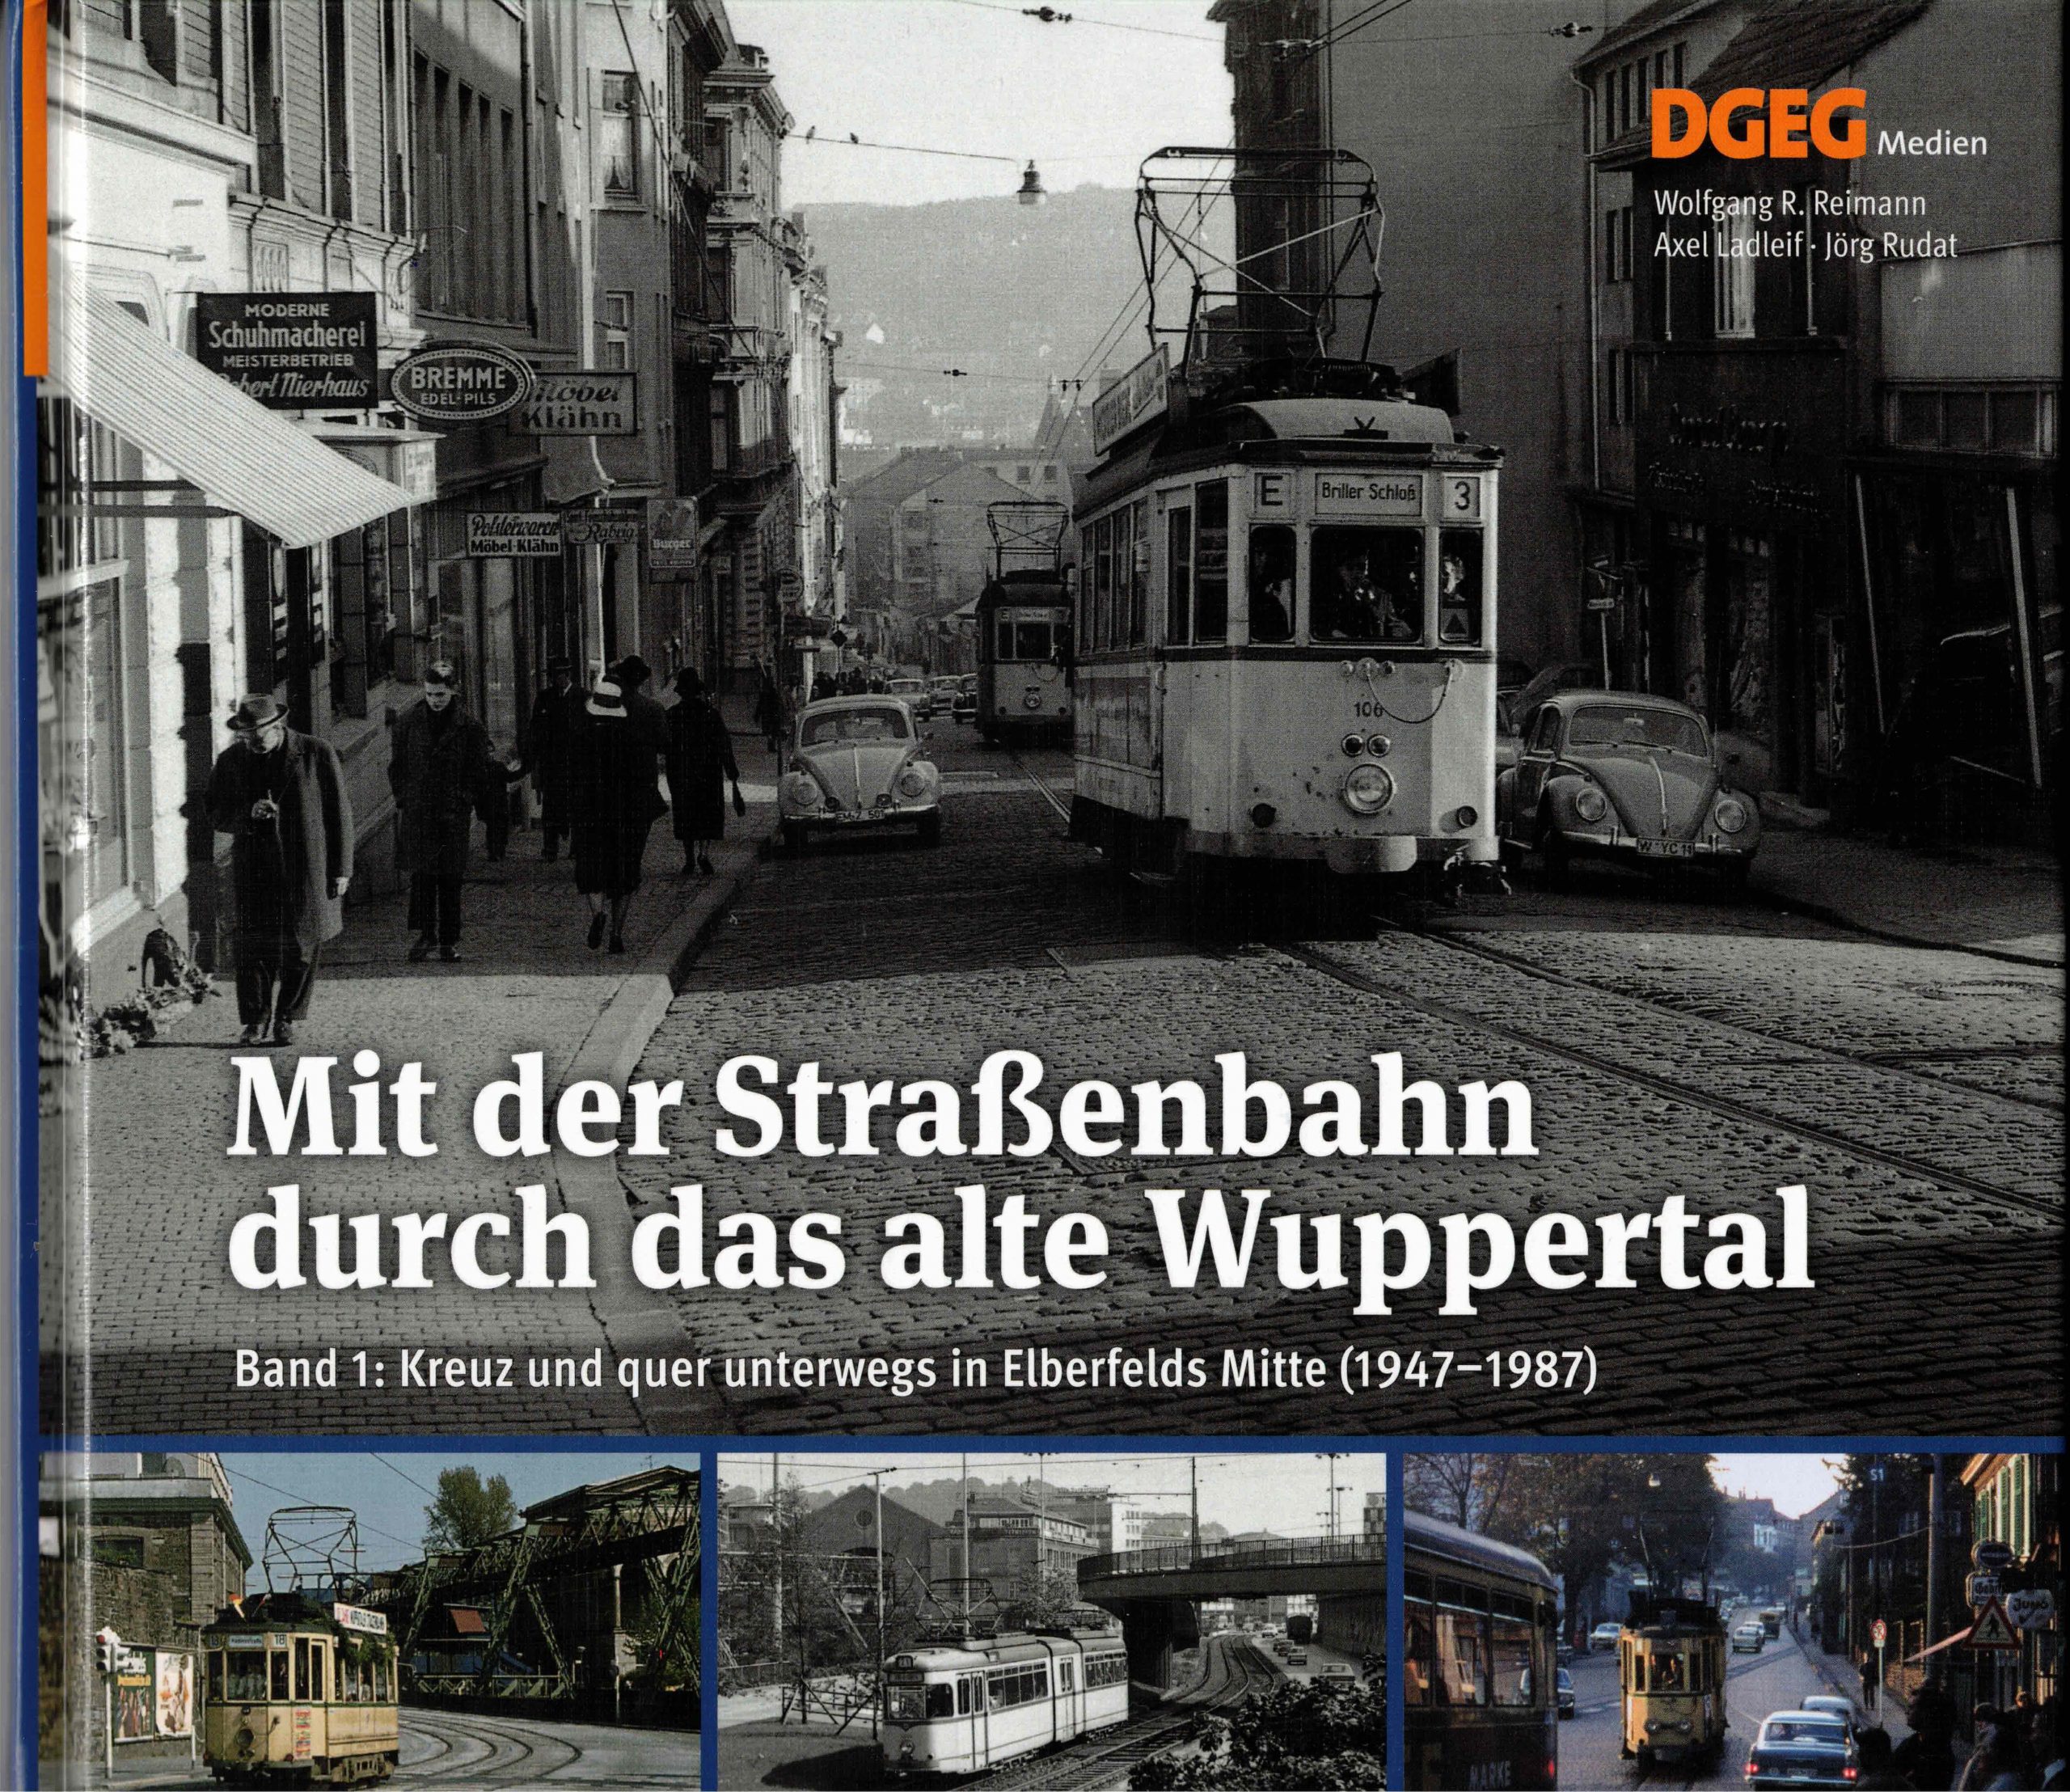 Featured image for “Juli 2022 – Mit der Straßenbahn durch das alte Wuppertal”